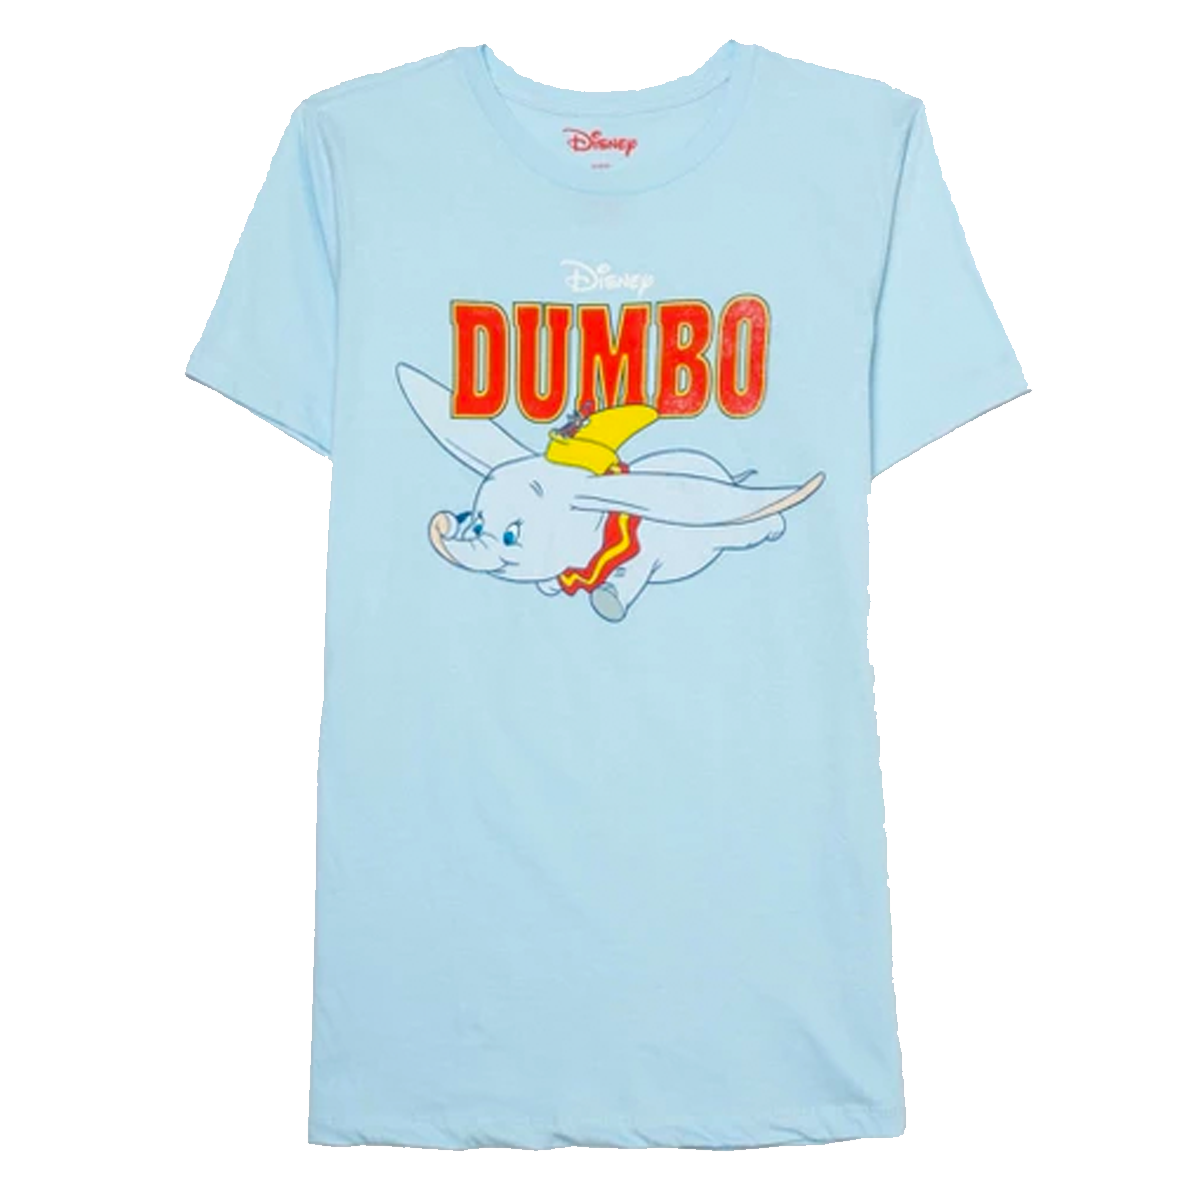 DumboTarget.png